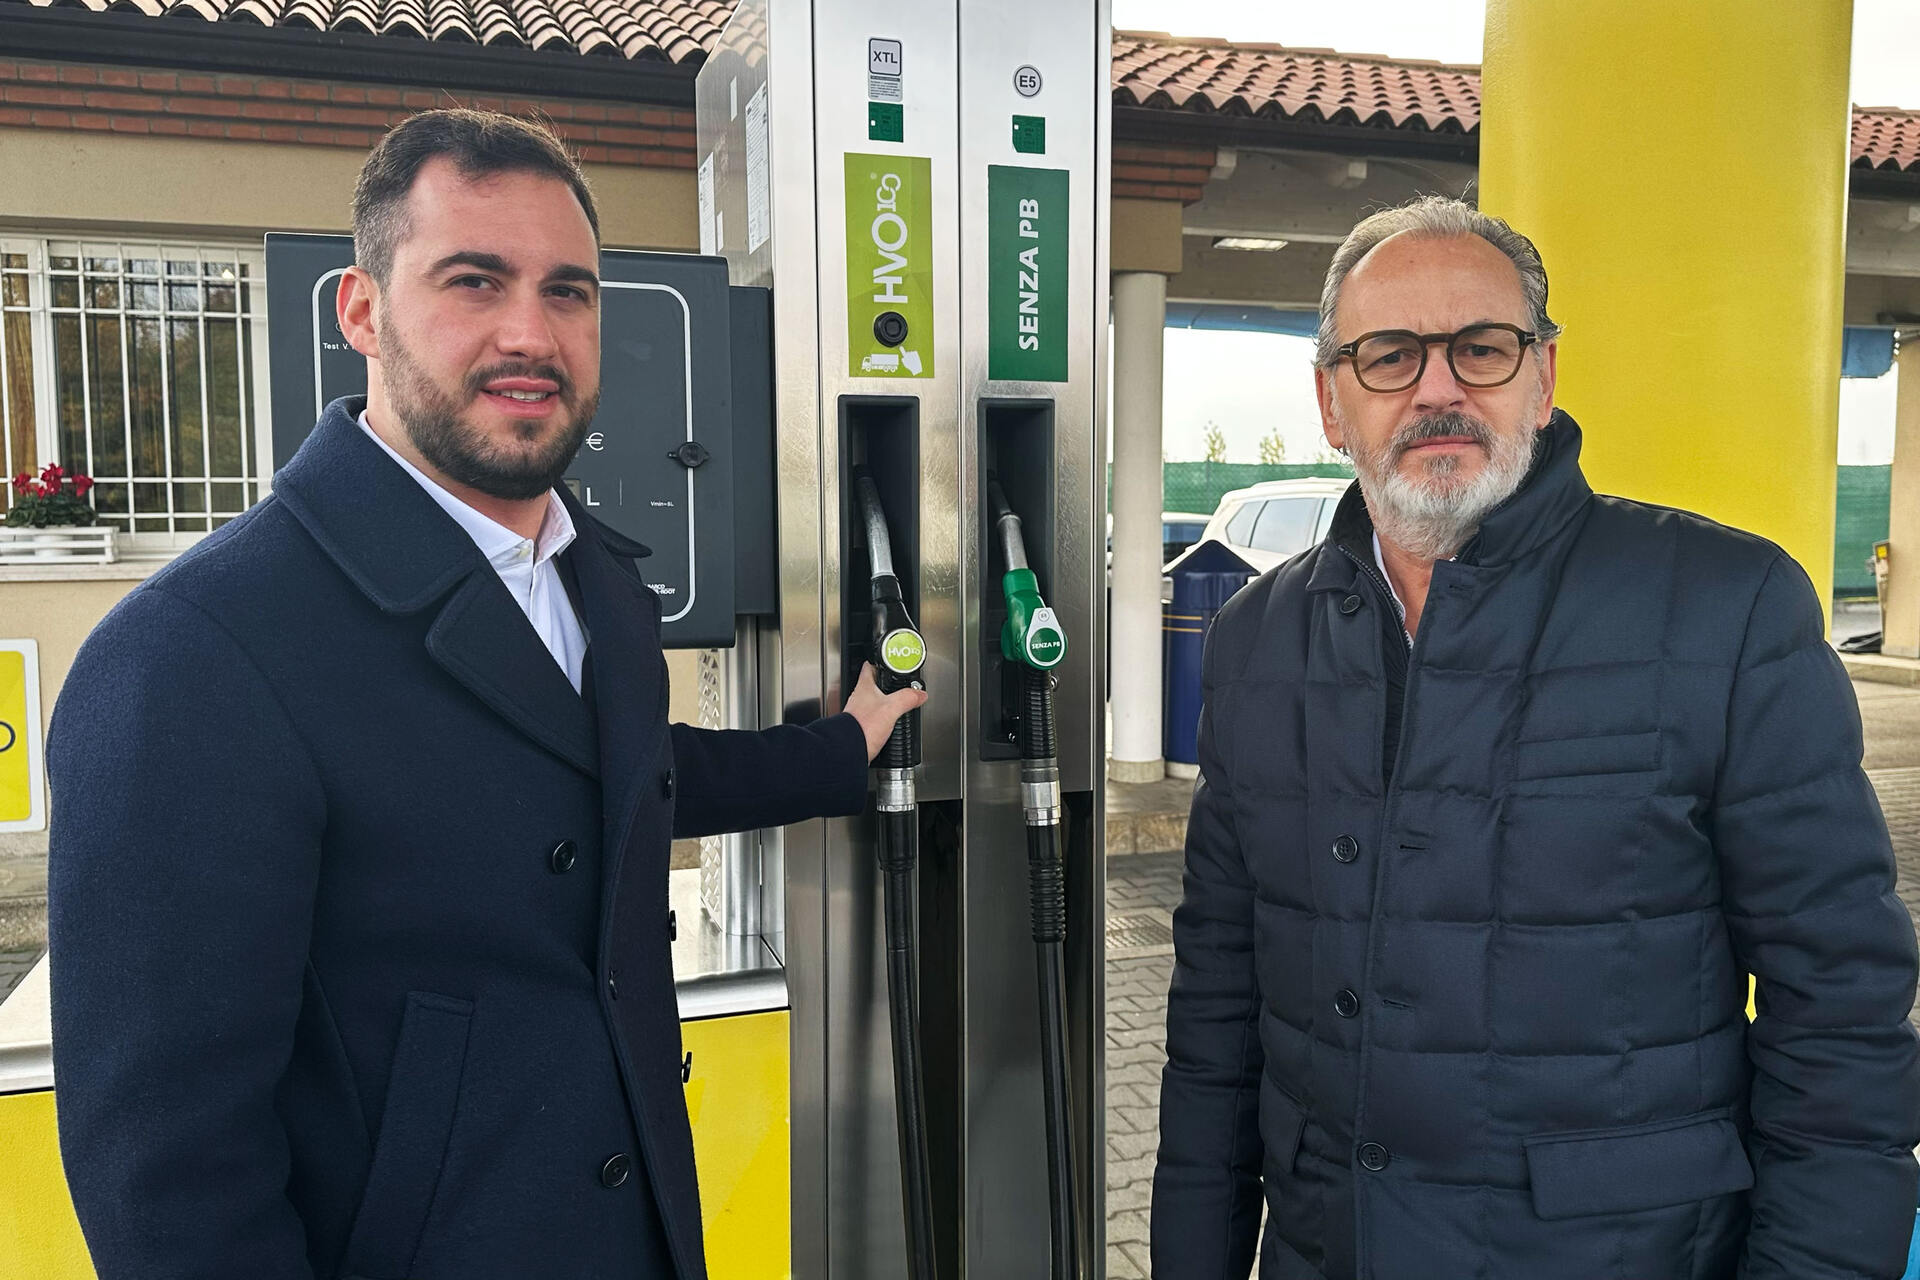 Biodiesel: Nicola Cavatton e Luca Cavatton sono rispettivamente Amministratore Delegato e Responsabile HVO100 di Costantin Spa